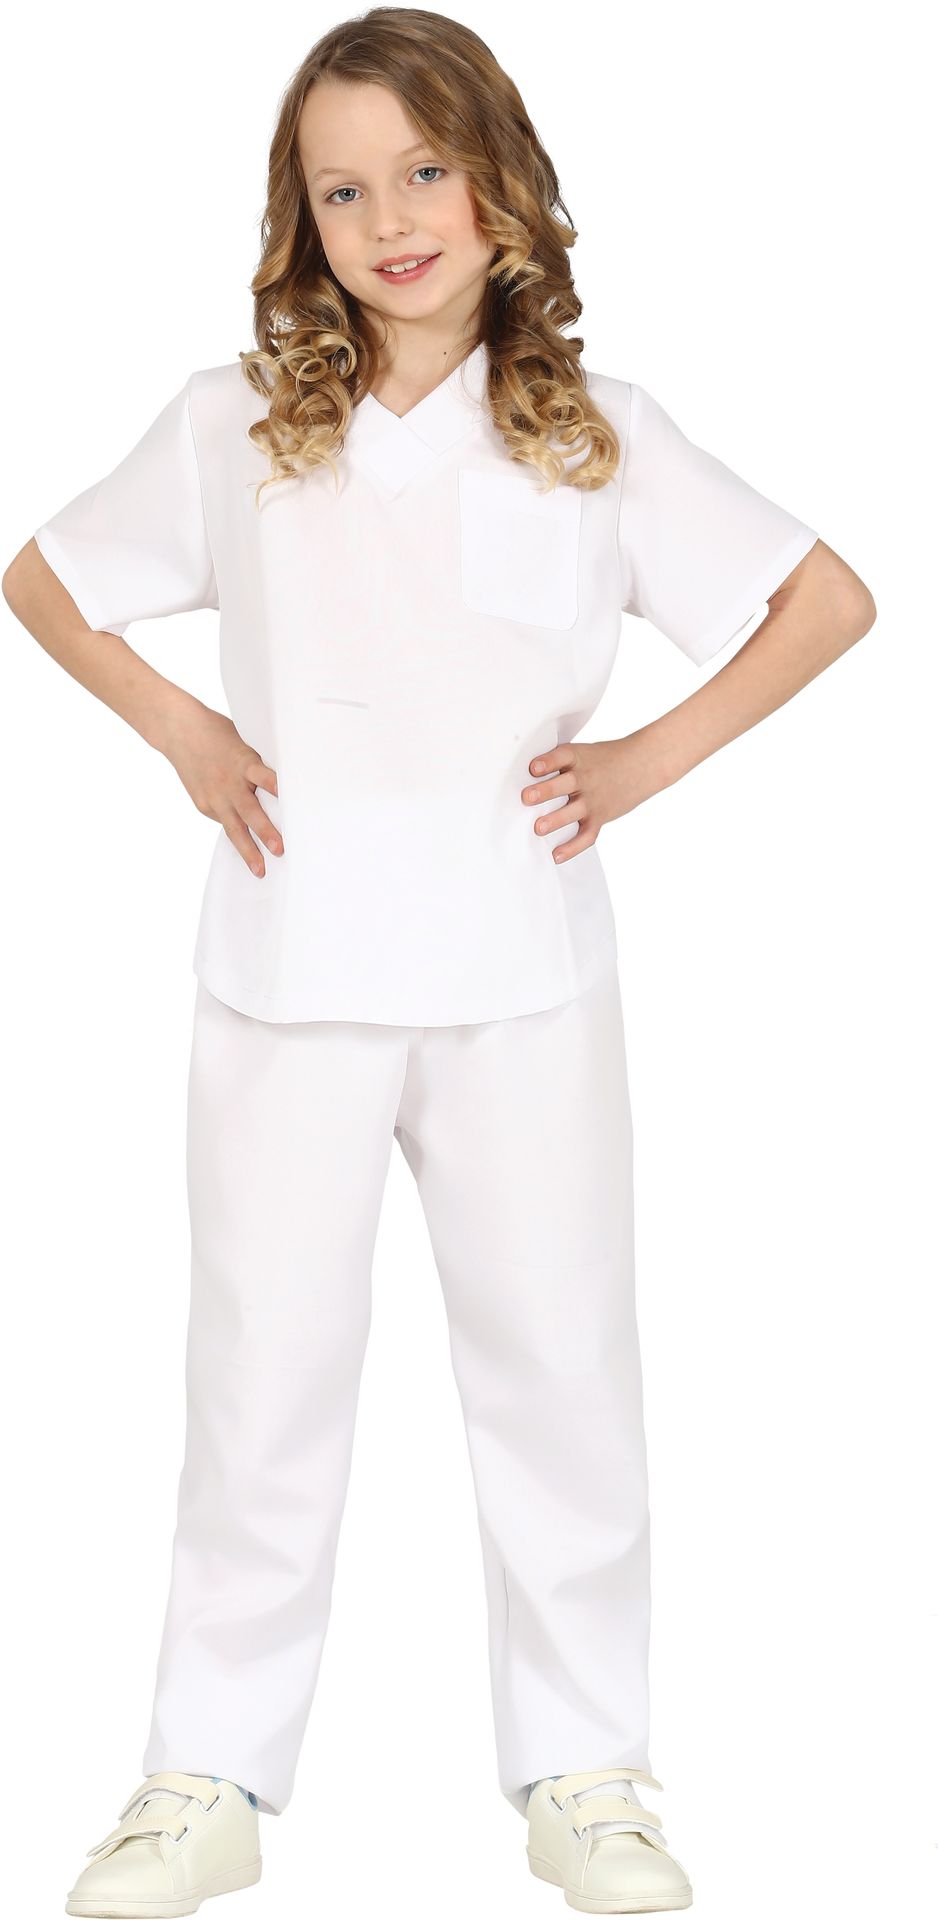 Witte ziekenhuis verpleegkundige kostuum kind